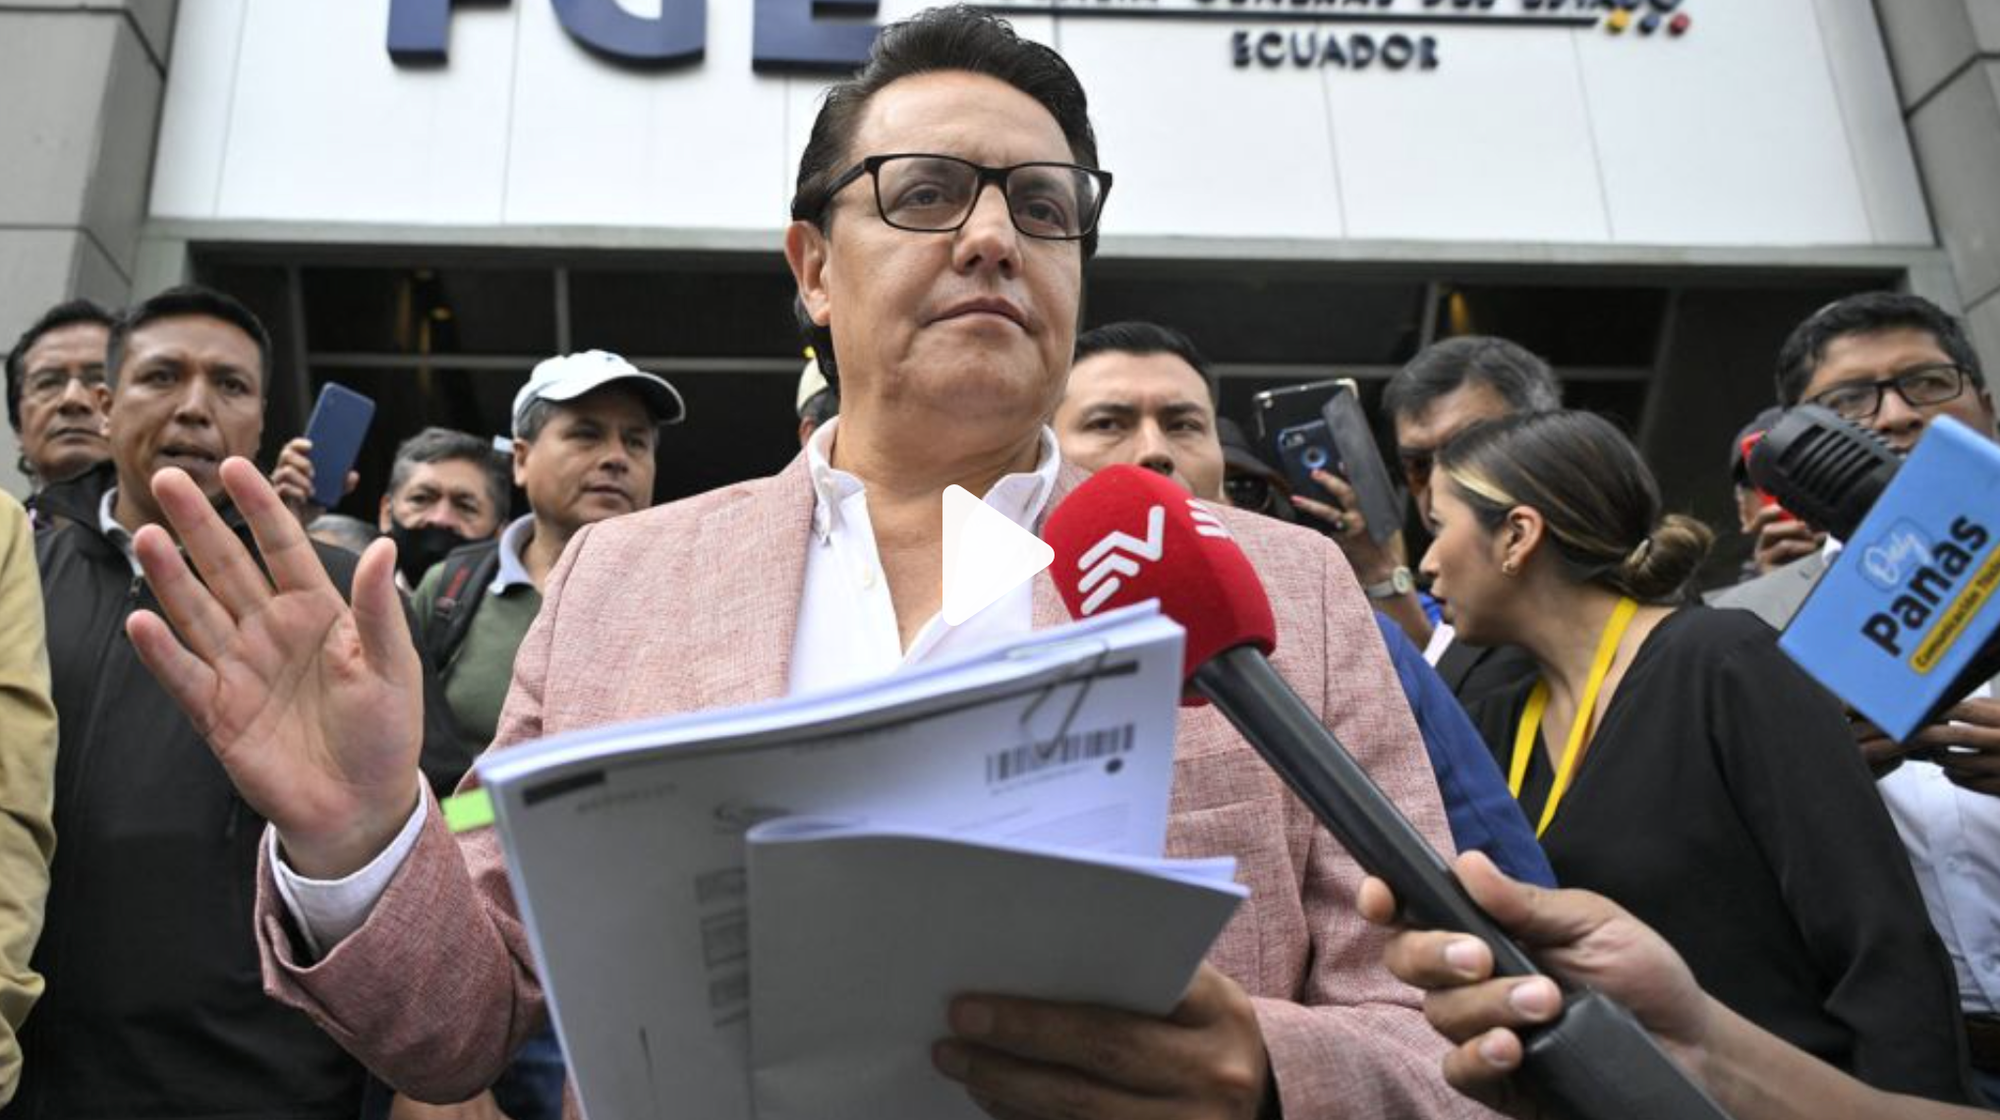 Ứng cử viên Tổng thống Ecuador bị bắn dã man ngay khi tranh cử - Ảnh 1.